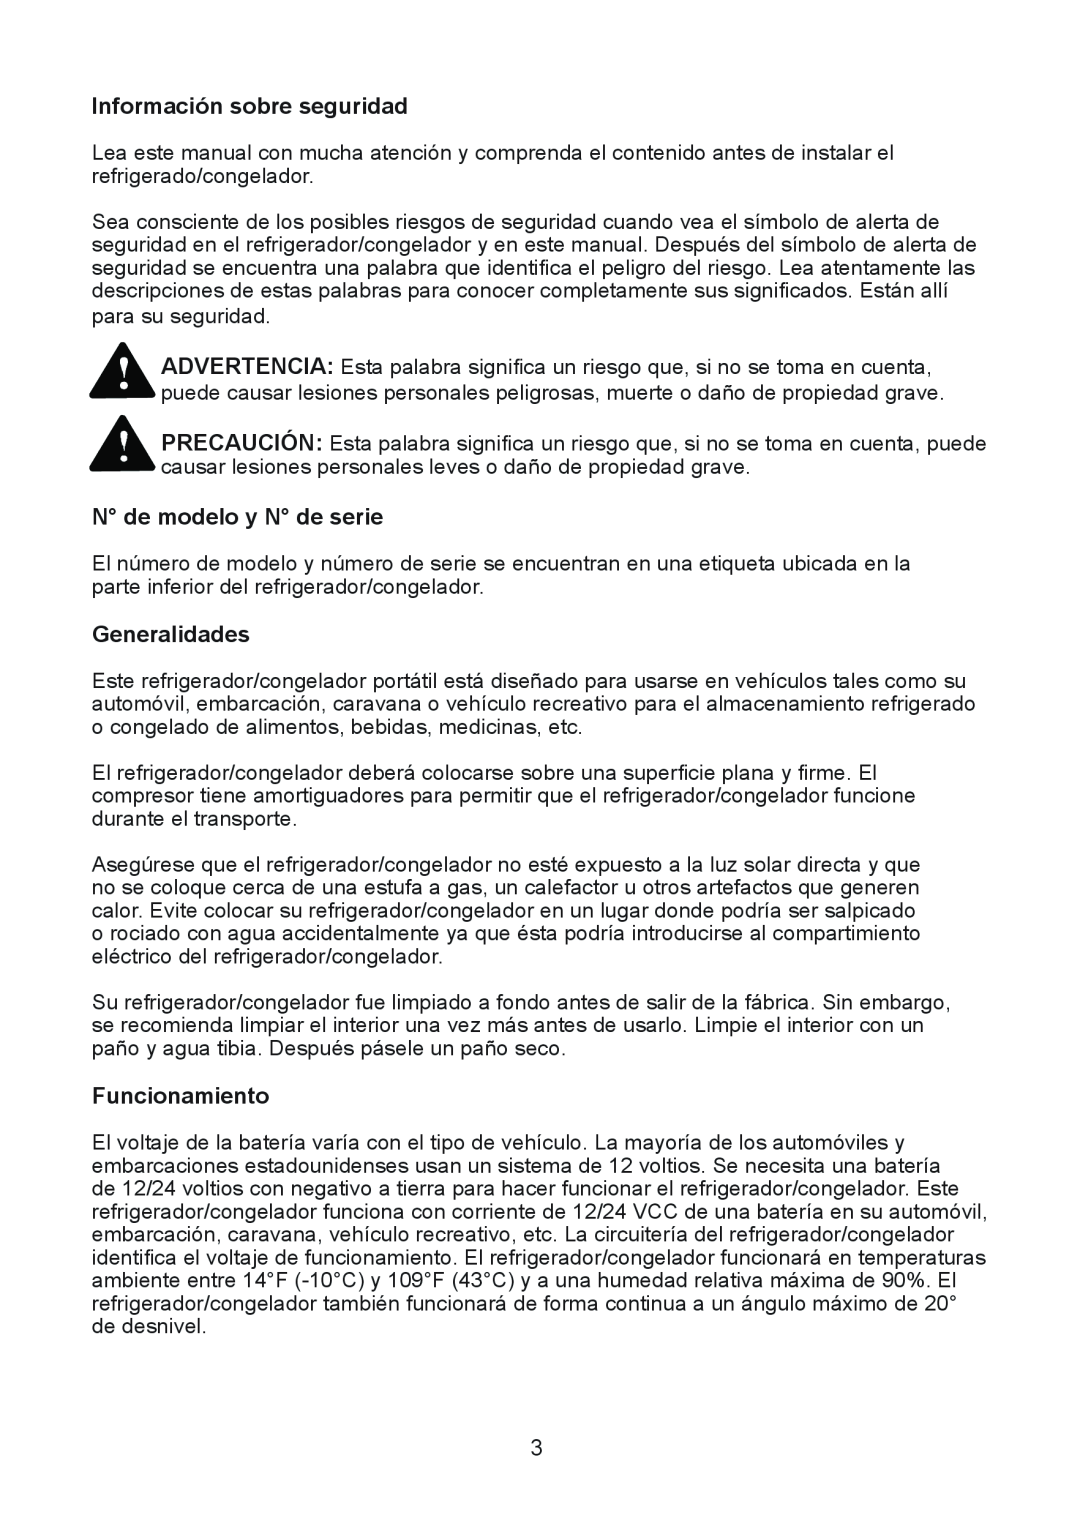 Norcold NRF30 manual Información sobre seguridad, N de modelo y N de serie, Generalidades, Funcionamiento 